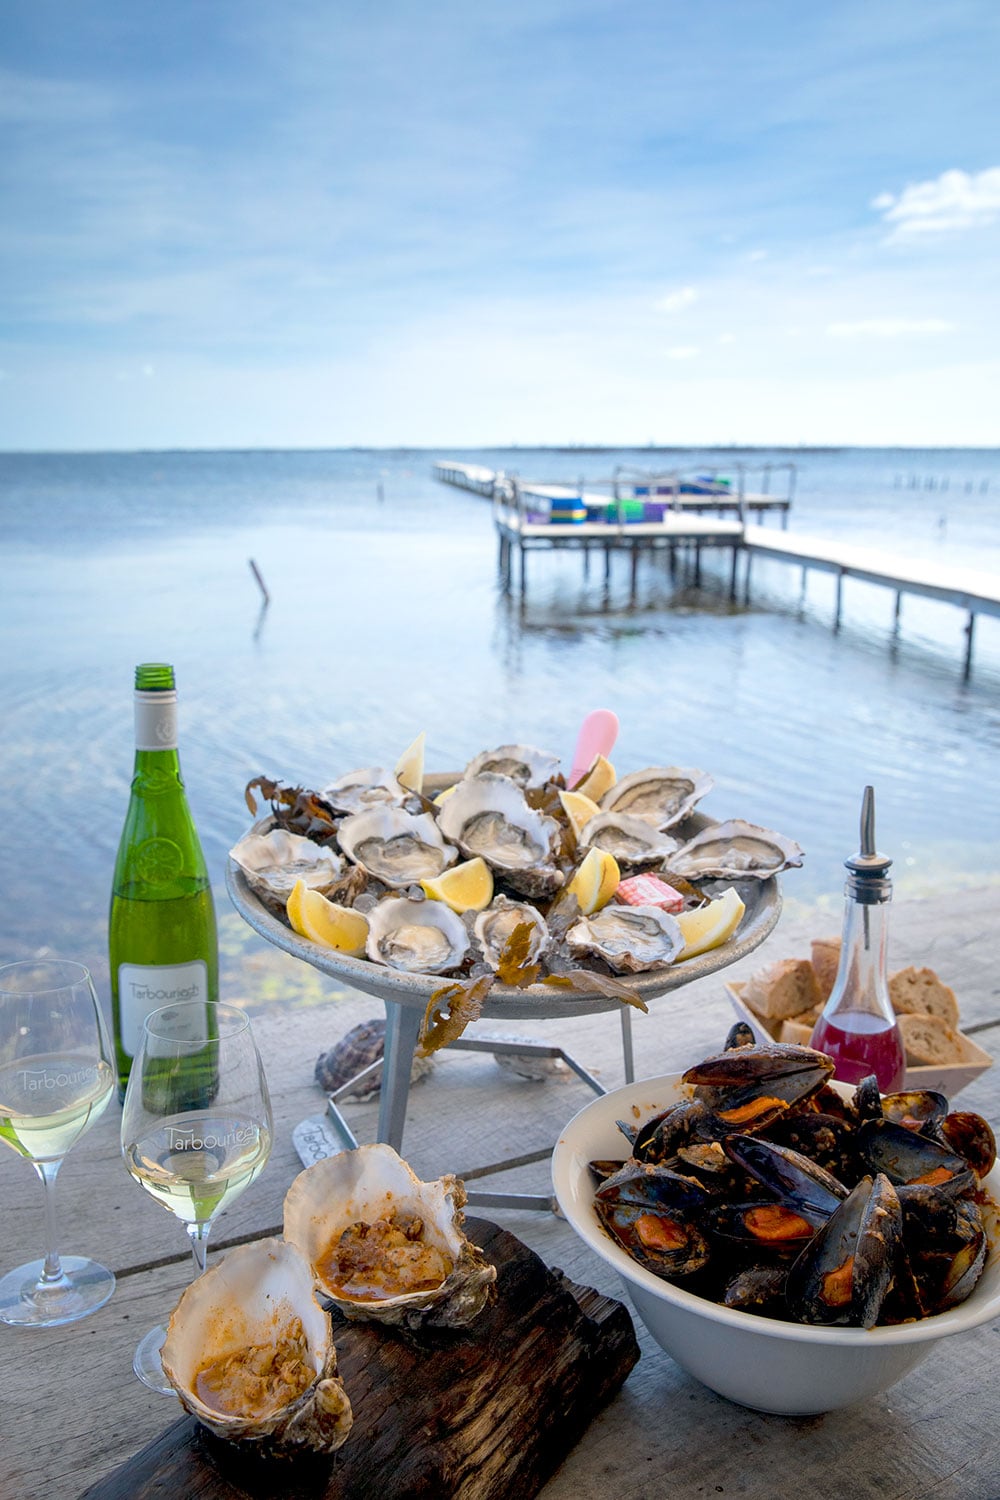 牡蠣各種、オーブンでさっと焼いた温製牡蠣の他に、ムール貝の伝統料理、ブラスカード。海の幸を、青い海を眼前にいただく至福の時。